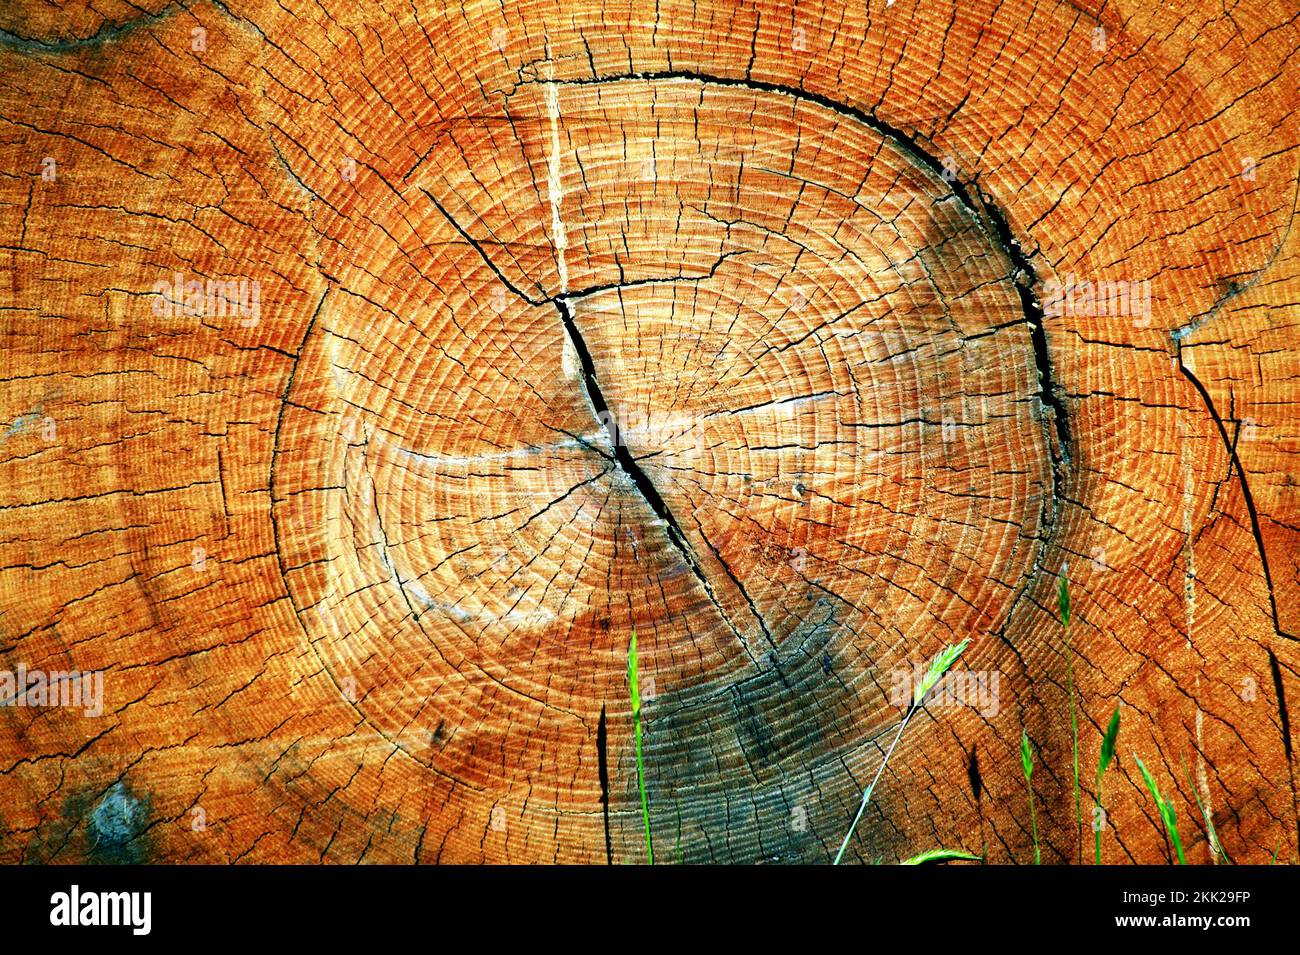 Coupe transversale d'un tronc d'arbre scié coupé montrant ses anneaux d'arbre de croissance annuelle, image de stock photo Banque D'Images